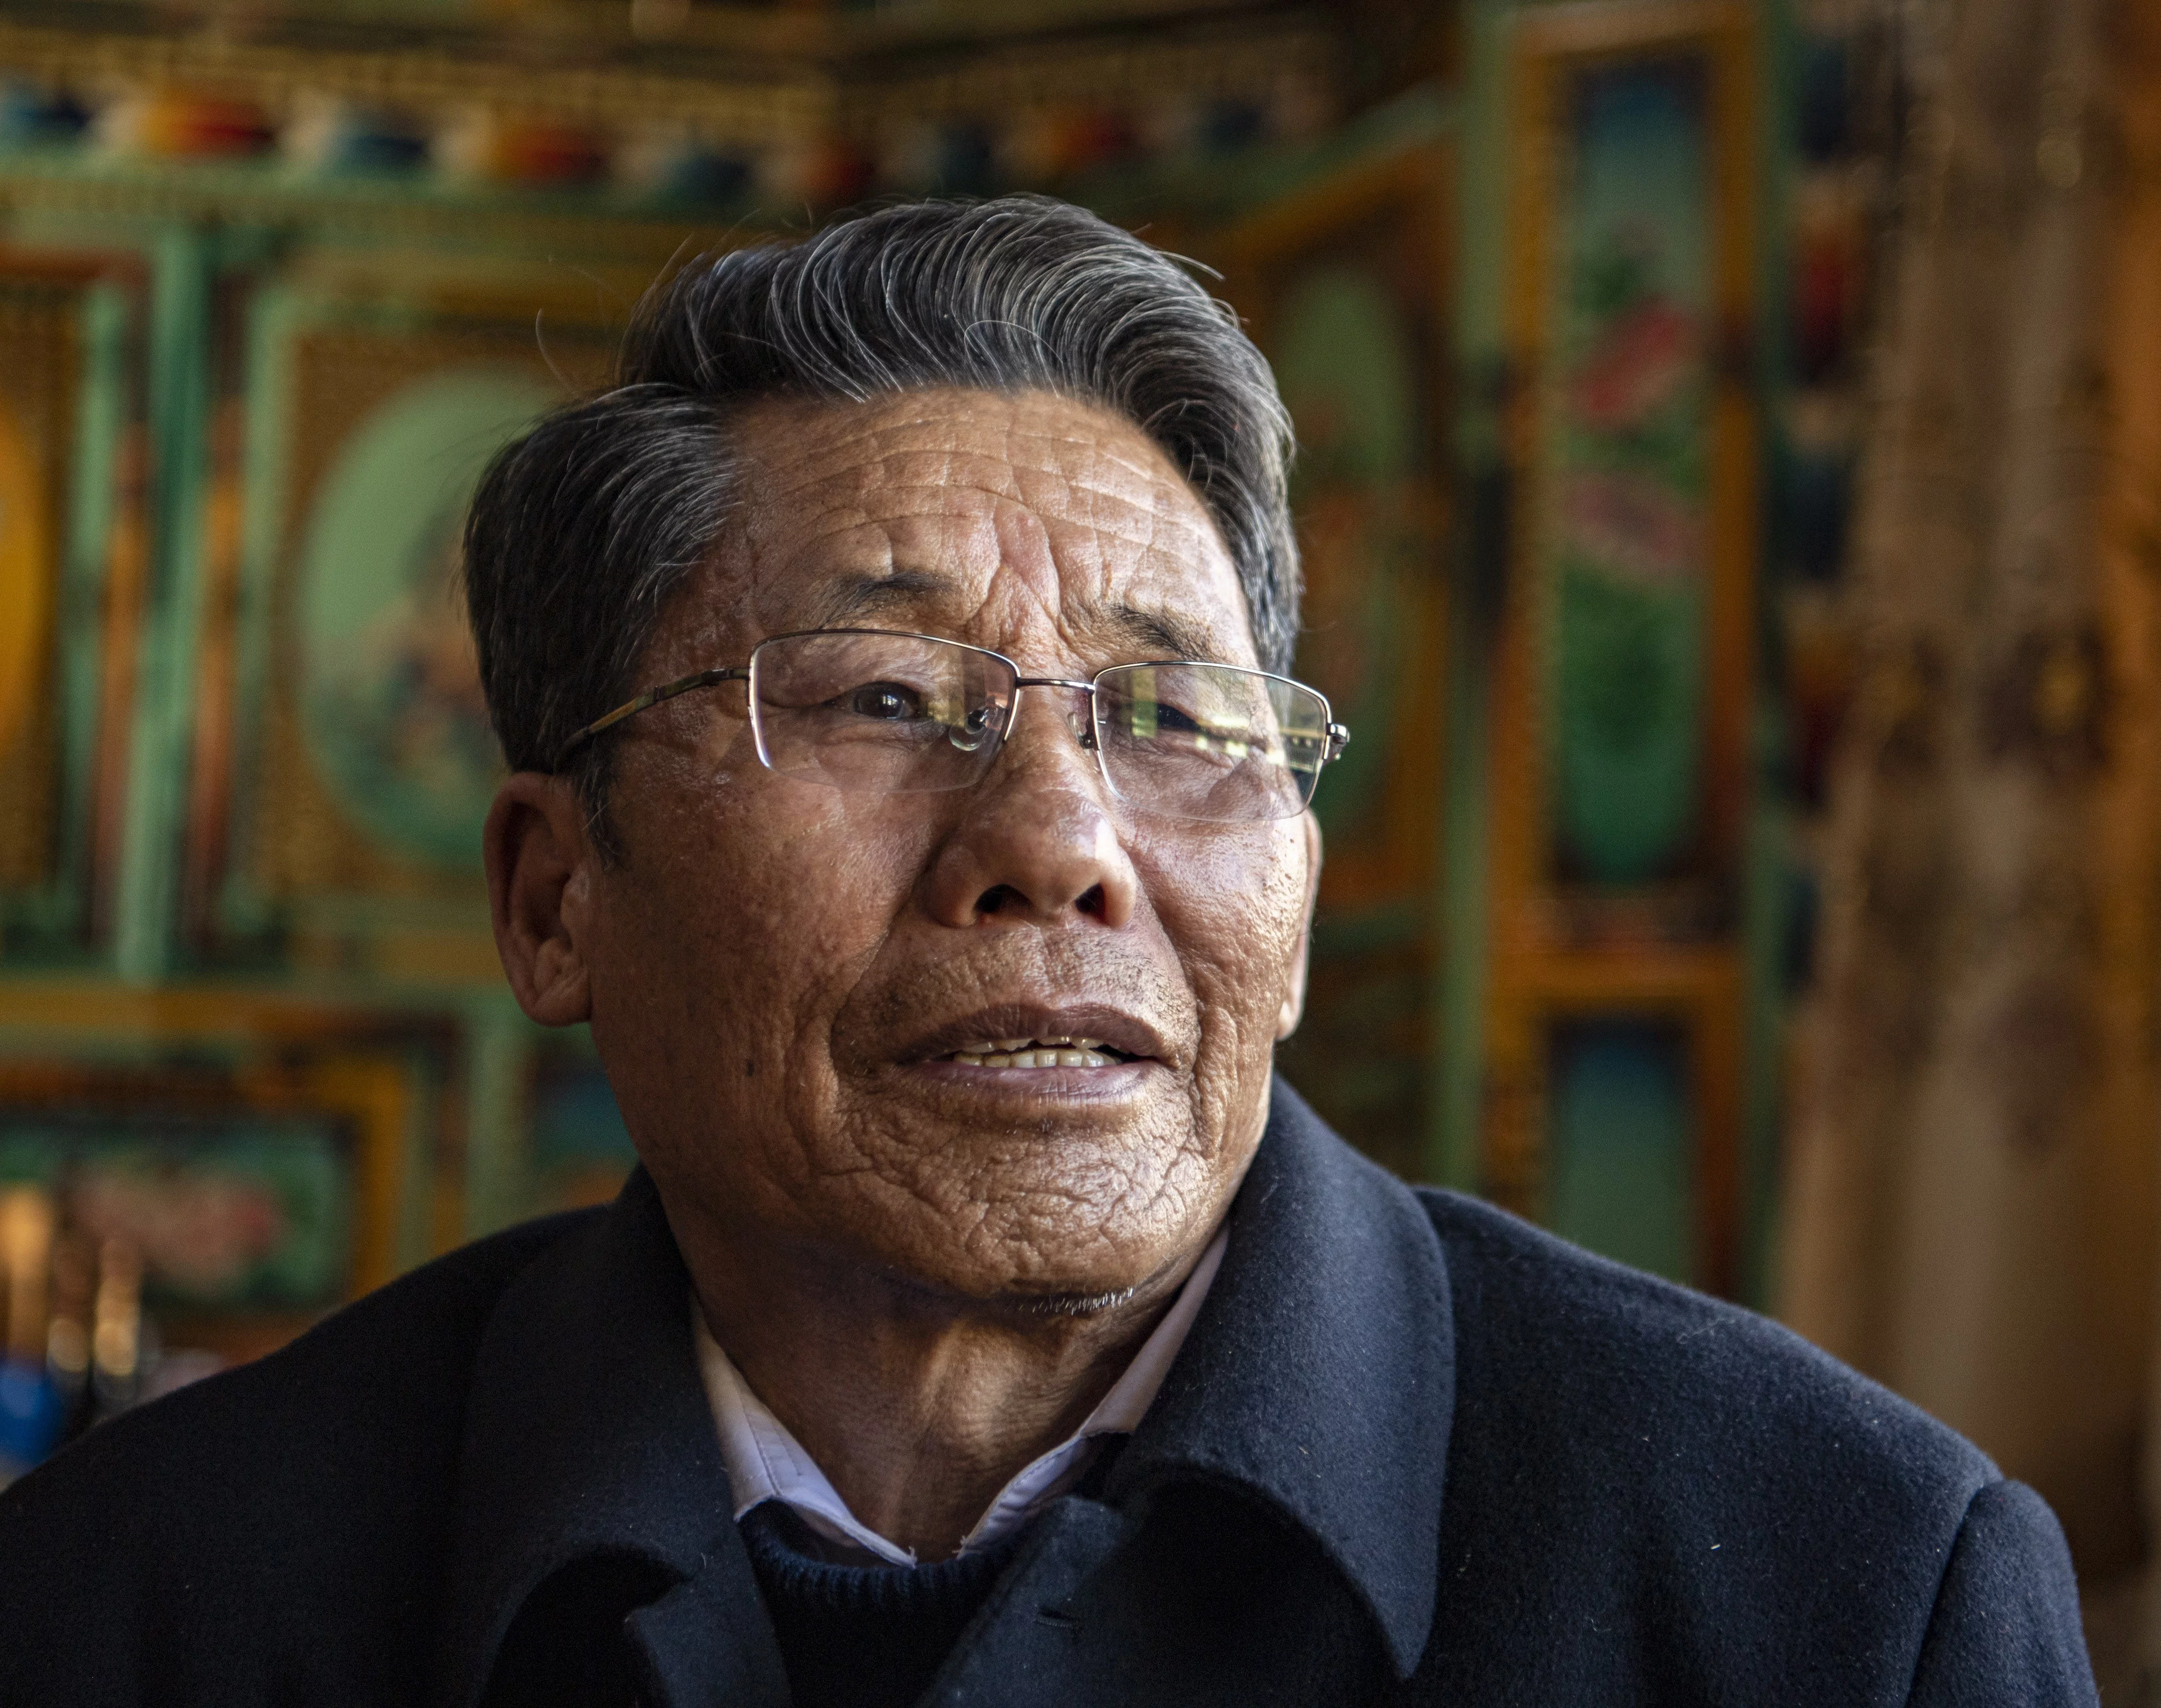 新华社照片，拉萨，2021年4月14日 苦难和新生——西藏翻身农奴影像档案：洛松朗加 这是洛松朗加的肖像（2月19日摄）。 洛松朗加家住西藏昌都市左贡县旺达镇列达村，从六七岁有记忆开始，洛松朗加的生活里就只有给农奴主放牛、拾柴火和捡牛粪。 家里7口人，只有1亩多地，还要交沉重的赋税，农奴稍一做错事就会被打。小时候的洛松朗加，曾亲眼看到过爷爷被农奴主吊起来毒打。仅仅是外出打猎的收获不好，爷爷就被打了100大板，当场晕了过去，话都说不出来，身上的伤很久都好不了。“是后来解放军来了，才给爷爷治好了伤。”洛松朗加说。 民主改革后，工作组带领群众分田地、分住房。洛松朗加家里分到了12亩地、1匹马和5头牛。除了终于拥有了自己的生产资料之外，洛松朗加“最大的感受是自由”。“想说什么就可以说什么，想做什么就可以做什么。自己的牛可以自己养，自己的地也可以自己种，收成都是自己的。”洛松朗加的回忆中充满了幸福。 1961年，12岁的洛松朗加第一次走进了乡里的学校。1964年，他又考入了县城里的小学。长大后，他从一名基层干部开始，不断成长进步。 在基层工作了一辈子，洛松朗加最为自豪的就是自己为群众真正做了些事。二十世纪八十年代末到九十年代初，他在县农牧局工作时，主持了推广冬小麦的工作，让左贡冬天的农田不再闲置。有些农民一开始不相信冬天地里也能长粮食，他就一家一家去做工作，发动党员率先试种。一些偏远的村庄路途遥远，他和干部们就自己带被褥、口粮，坚决不为群众家里多添一张吃饭的嘴。他还参与过“藏青320”等青稞新品种的推广工作，县里的青稞亩产量增长了约五成。 “以前农奴主名义上是地方管理者，但他们都是为了自己的利益，制定的政策都是为了壮大自己的家族，哪管农奴的死活。”洛松朗加感慨地说，“但共产党的官是为老百姓当的，心里装的永远是人民！” 新华社记者 孙非 摄